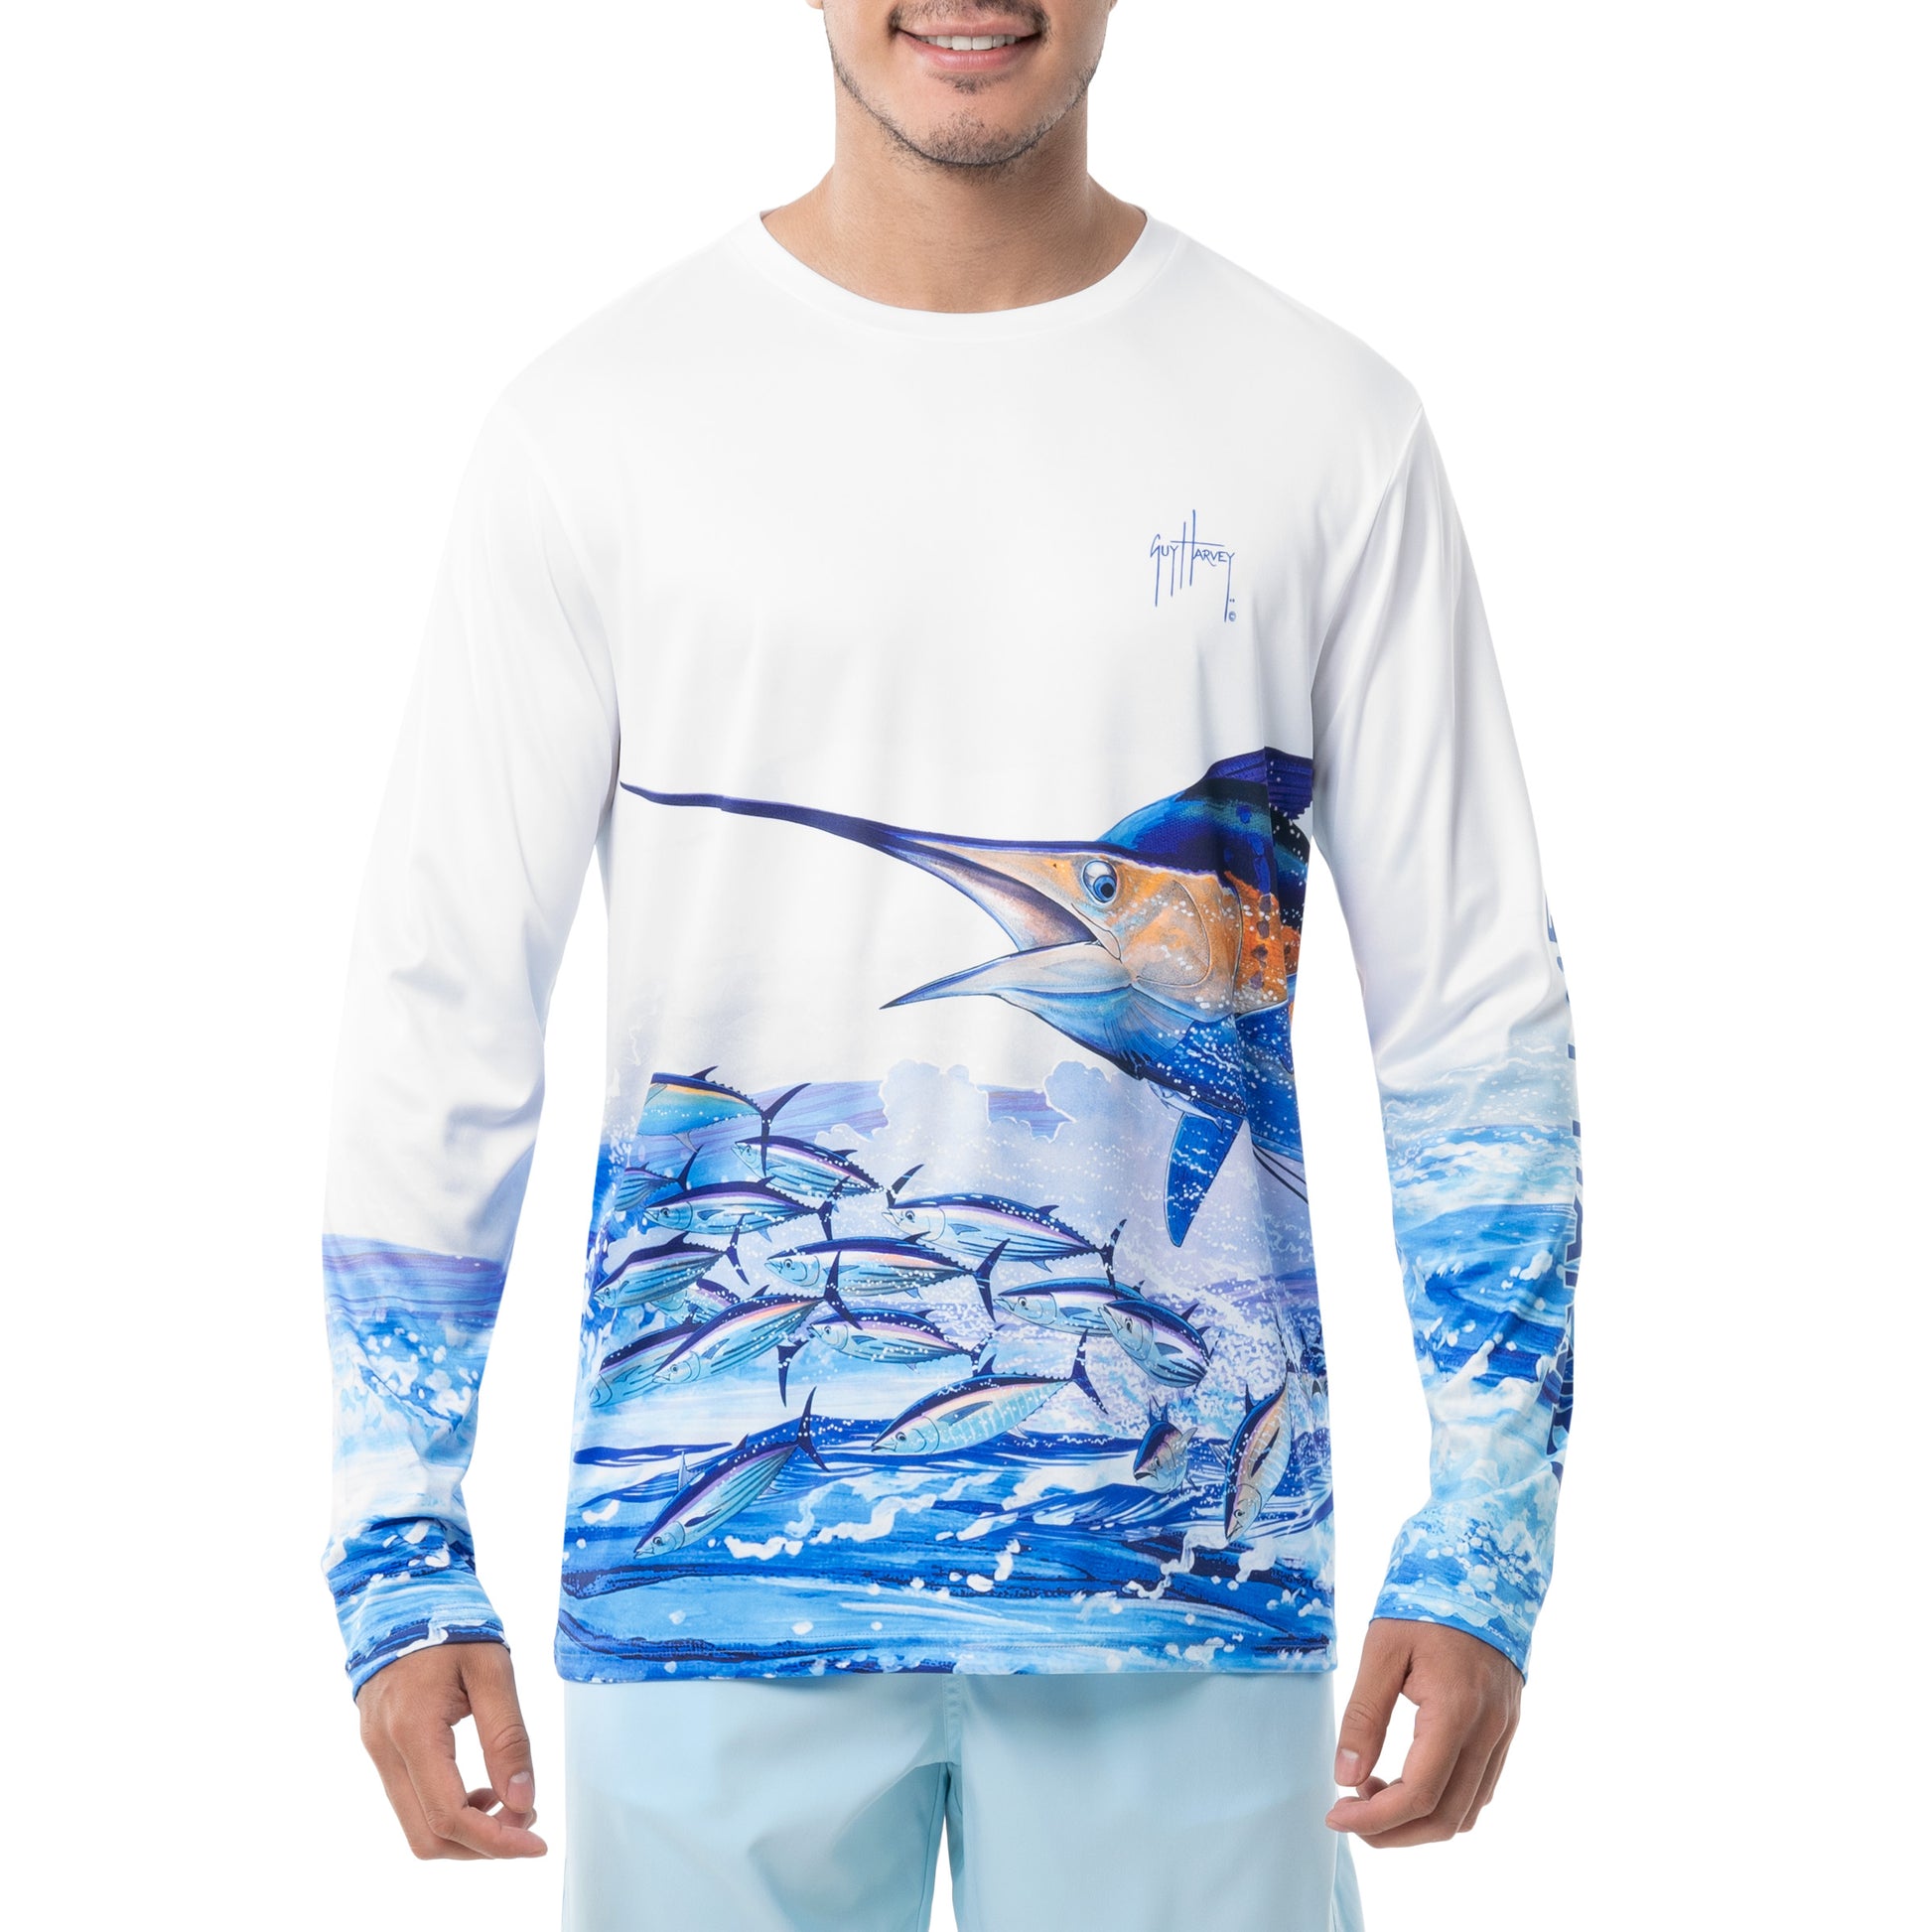 Men's Offshore Fishing Long Sleeve Performance Shirt – Guy Harvey